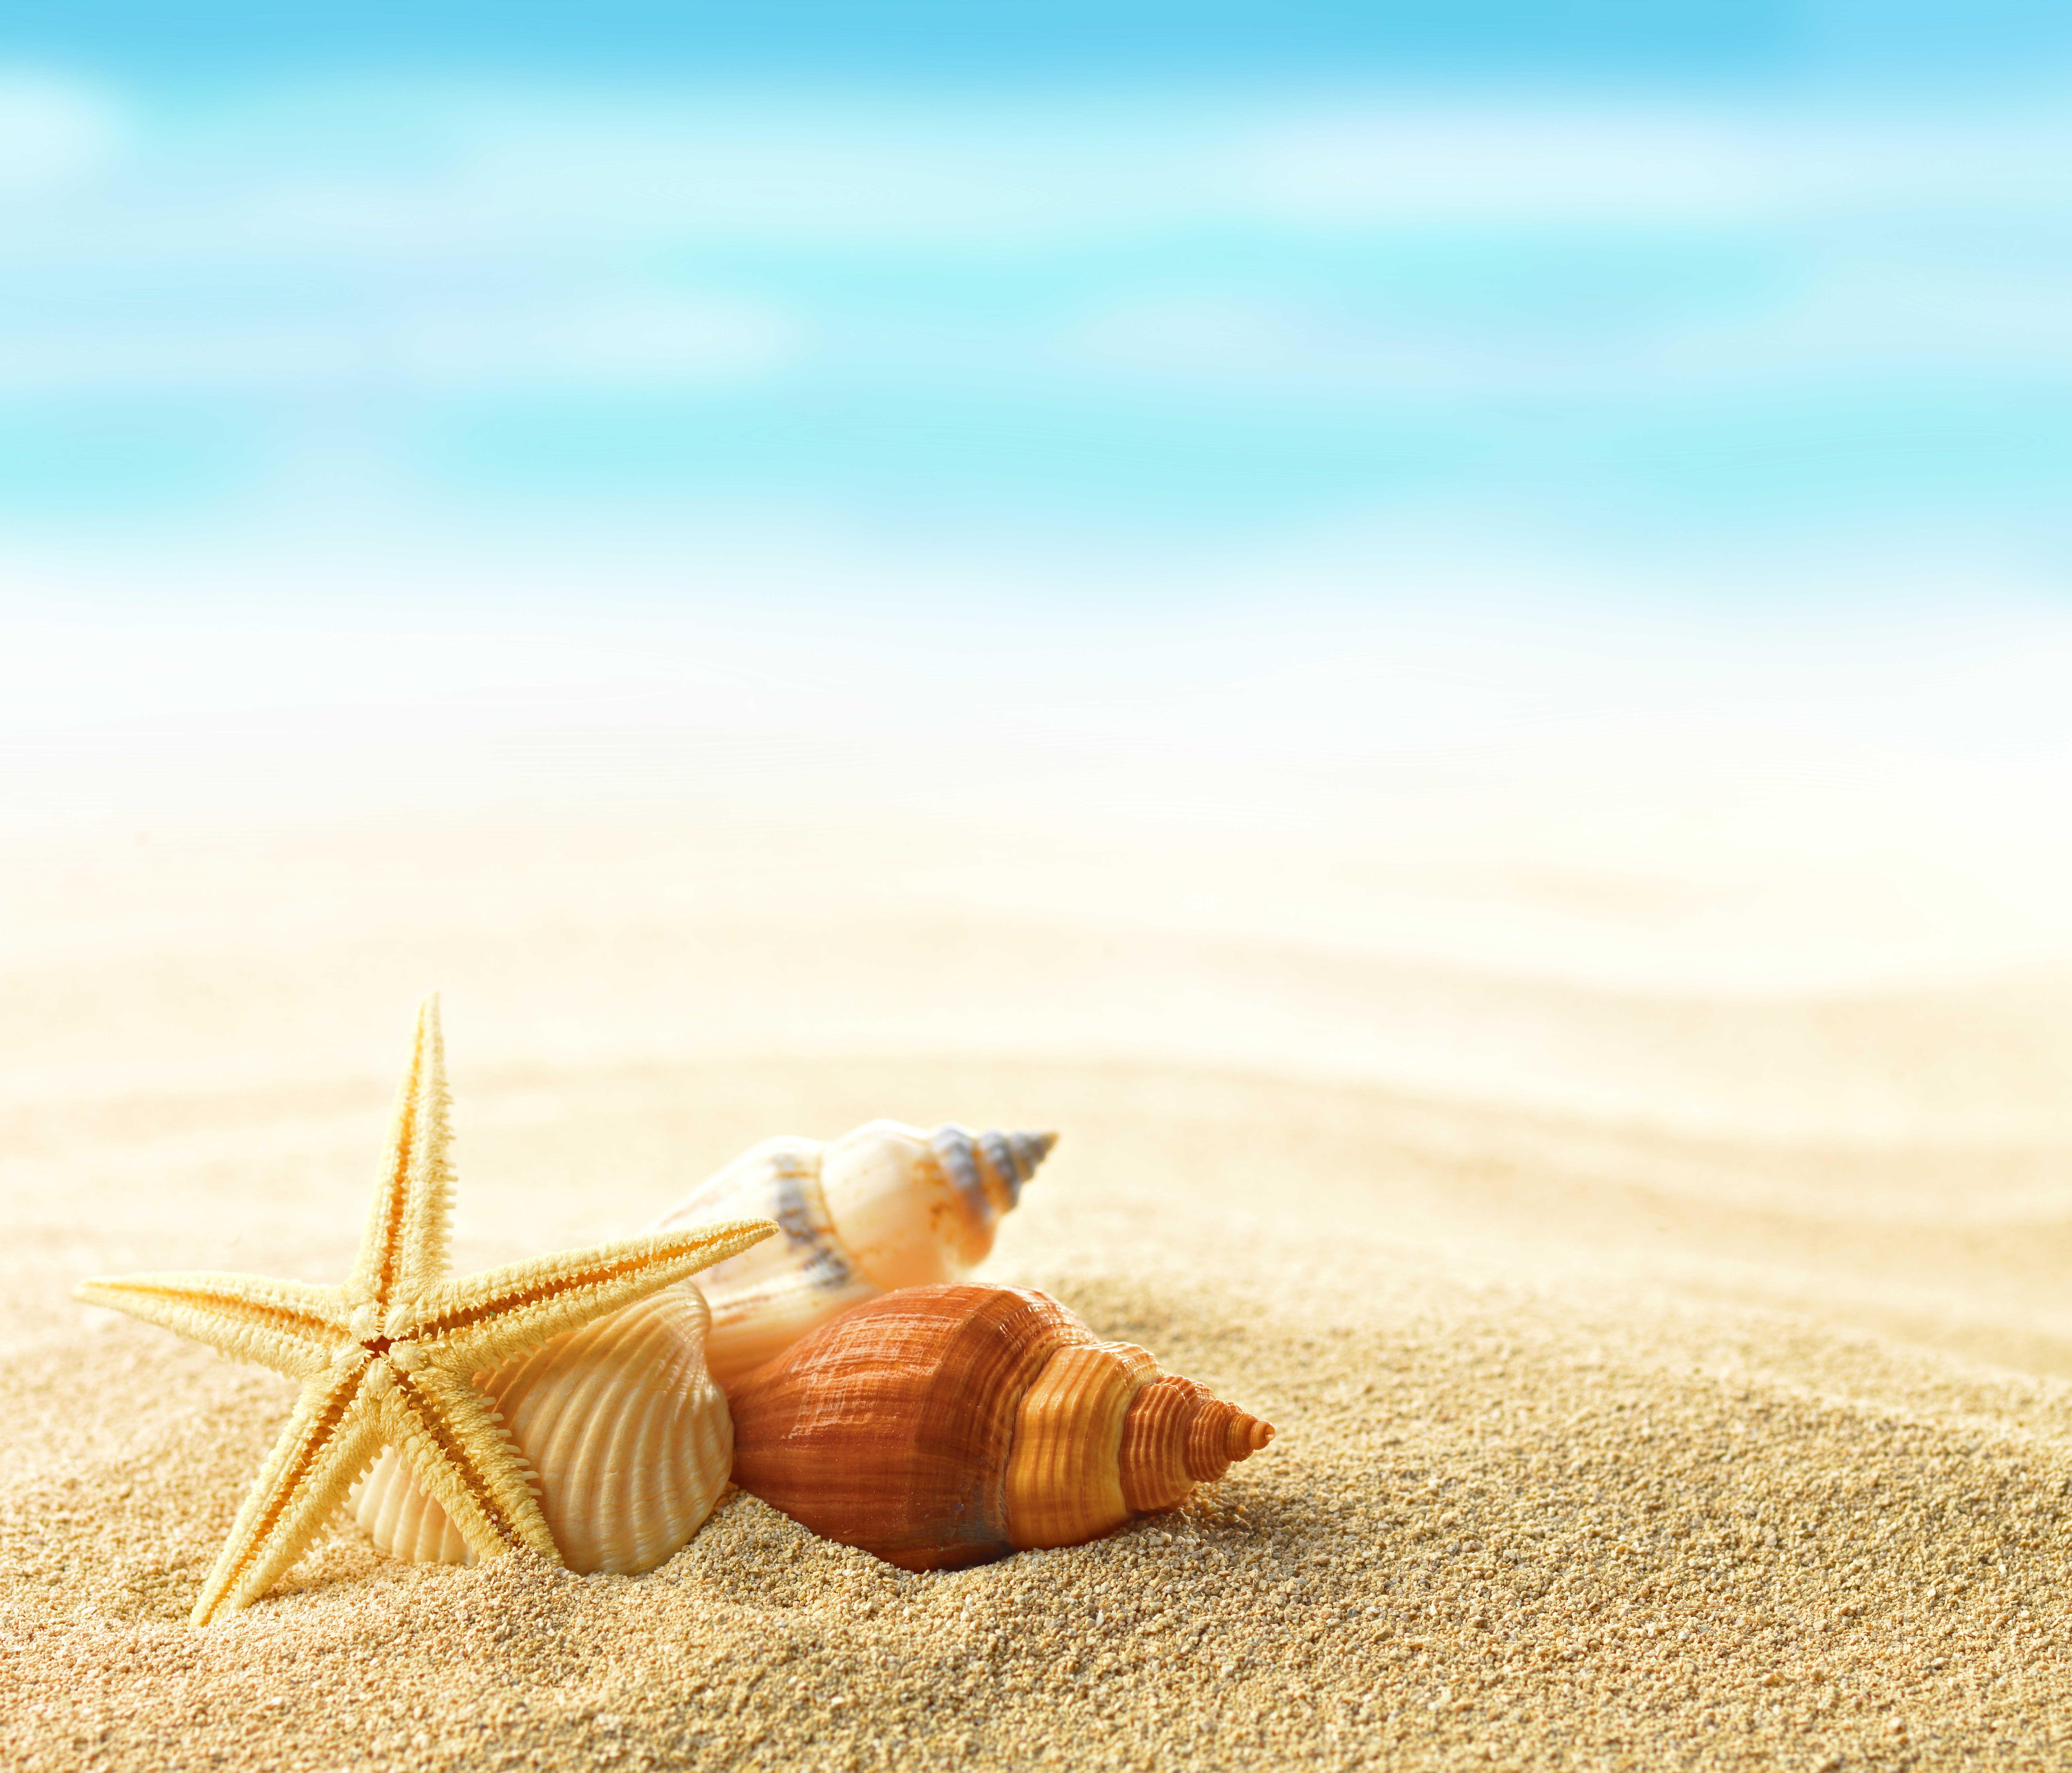 Скачать обои бесплатно Пляж, Песок, Морская Звезда, Оболочка, Земля/природа картинка на рабочий стол ПК